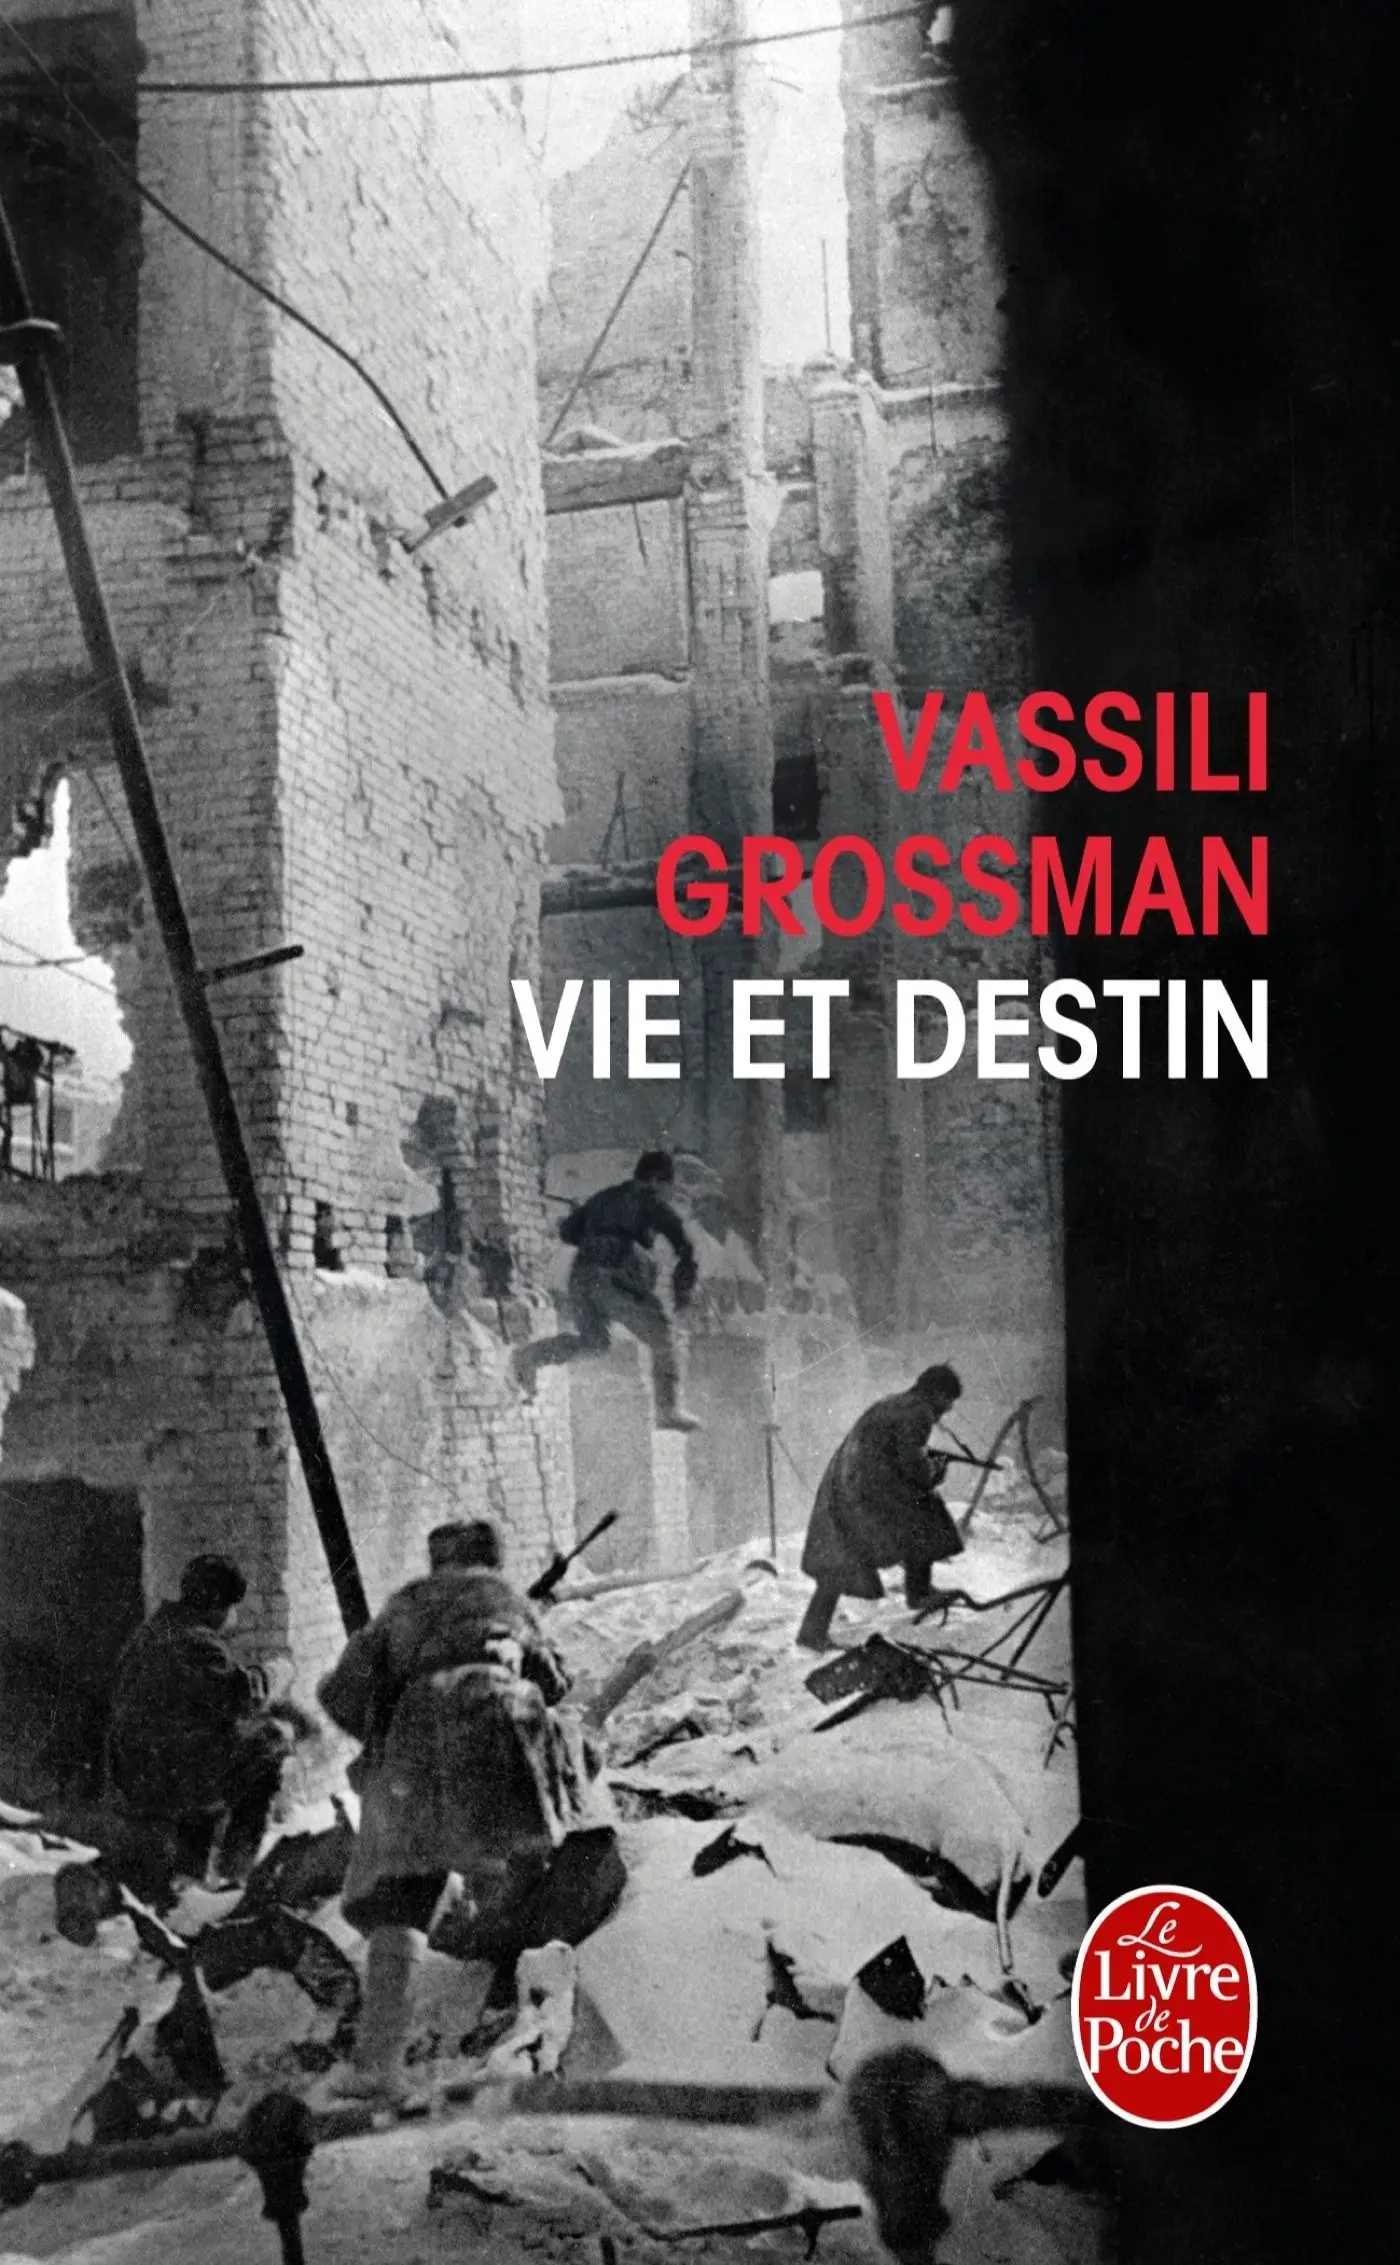 Vie et destin - Vassili Grossman, Livre pas cher Amazon